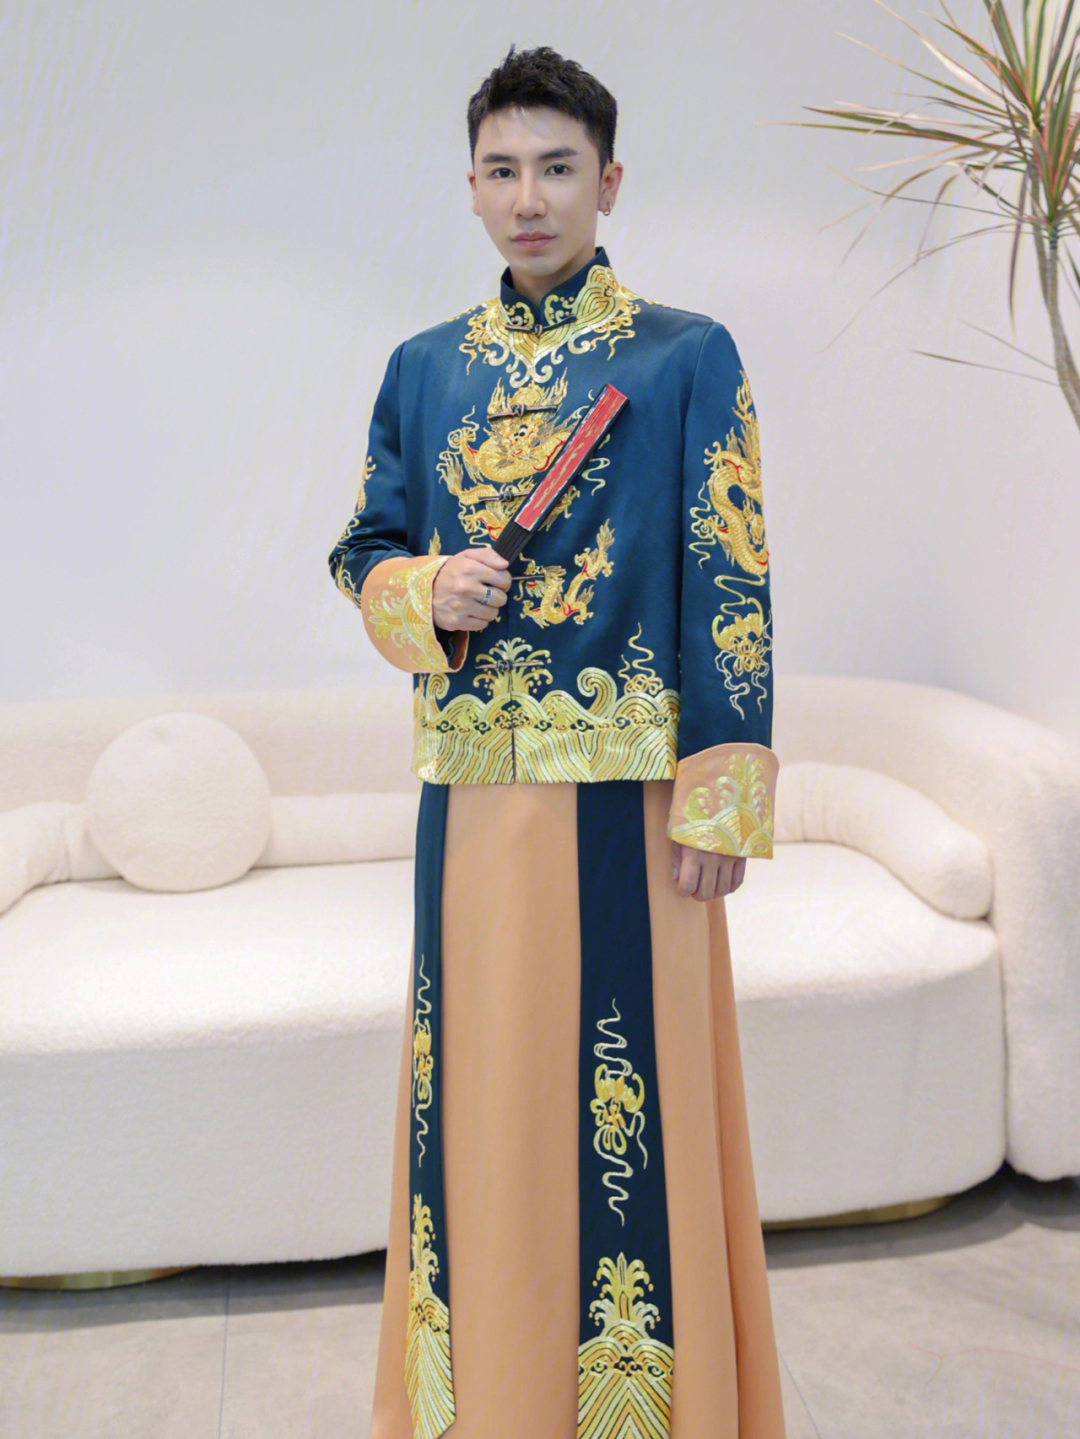 中式嫁衣男袍推荐78风度翩翩的男士秀禾服